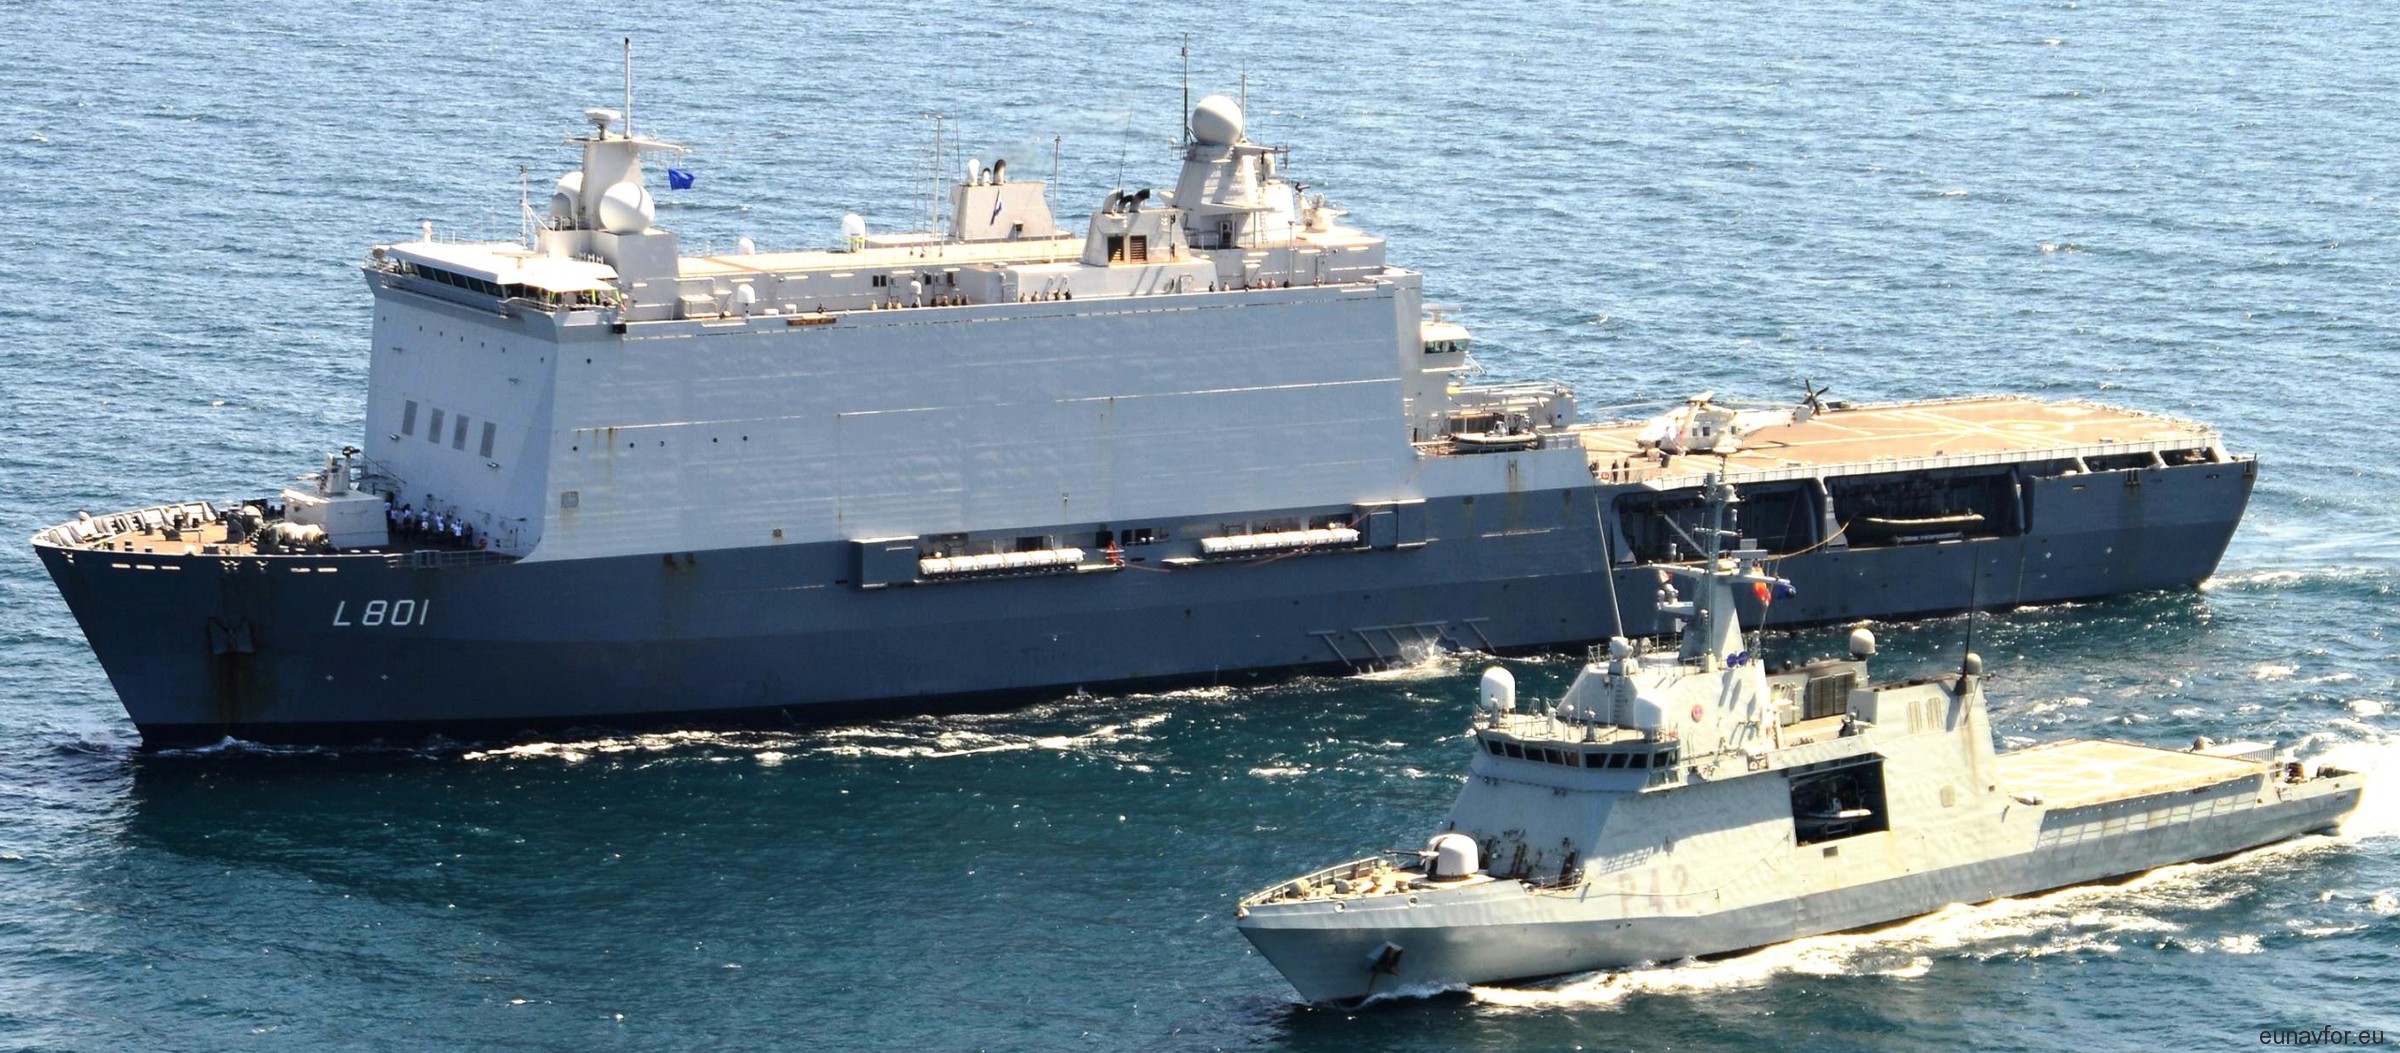 l-801 hnlms johan de witt amphibious ship landing platform dock lpd royal netherlands navy 37